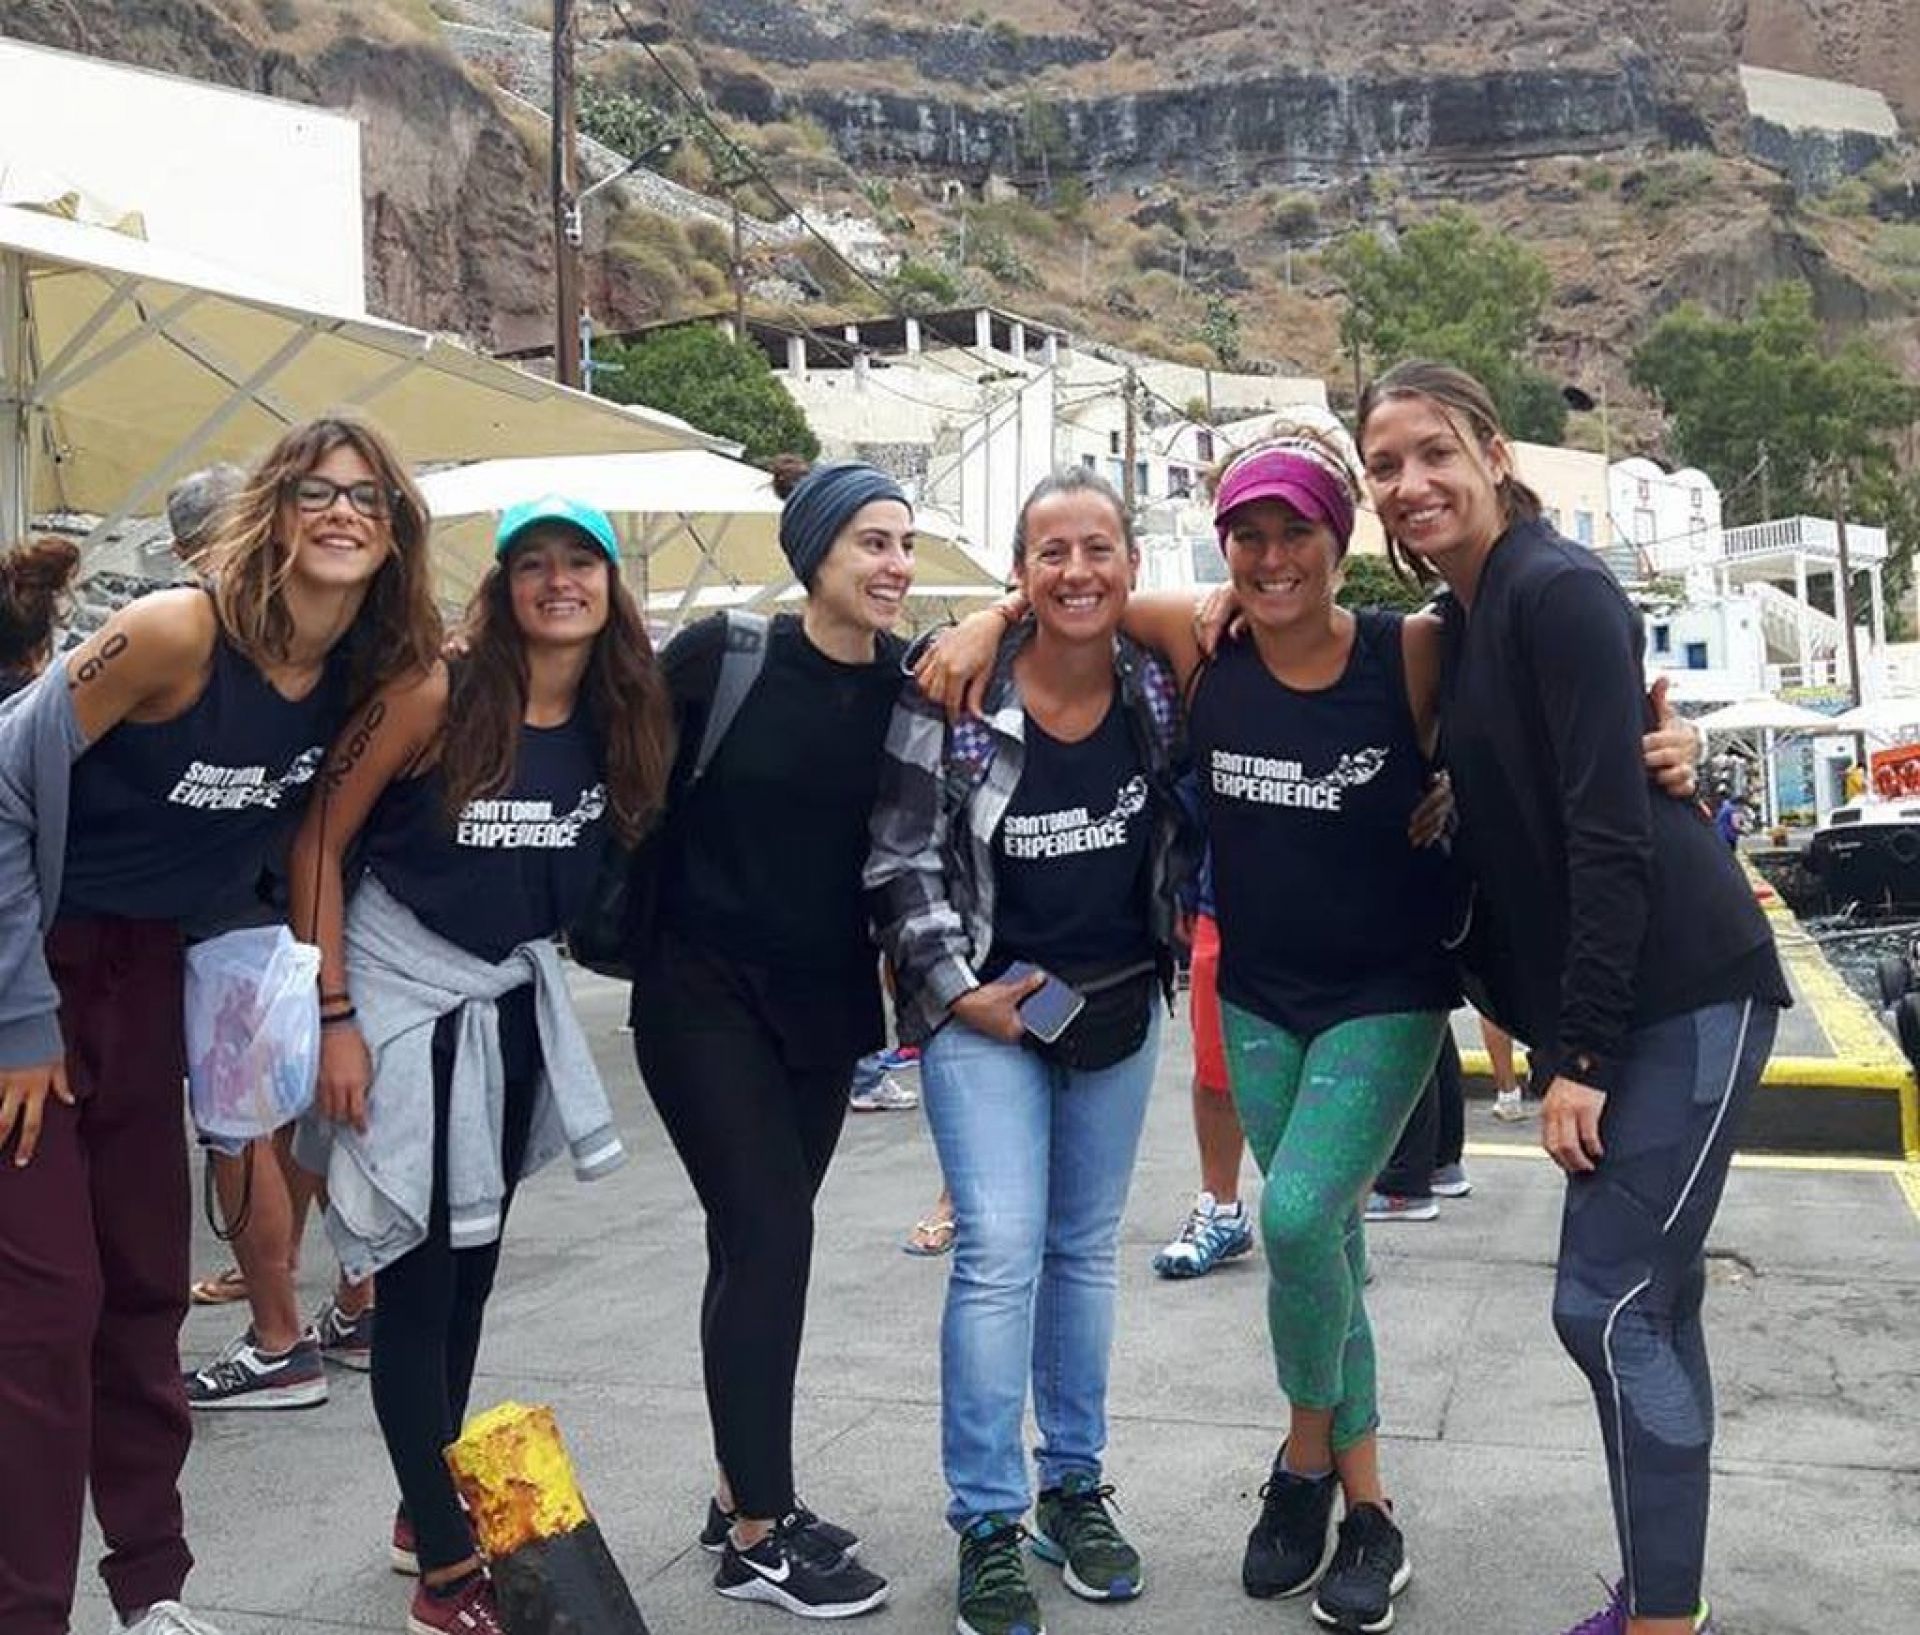 Οι επιδόσεις των αθλητών του Ν. Ο. Πάρου στο 3ο Santorini Experience 2017